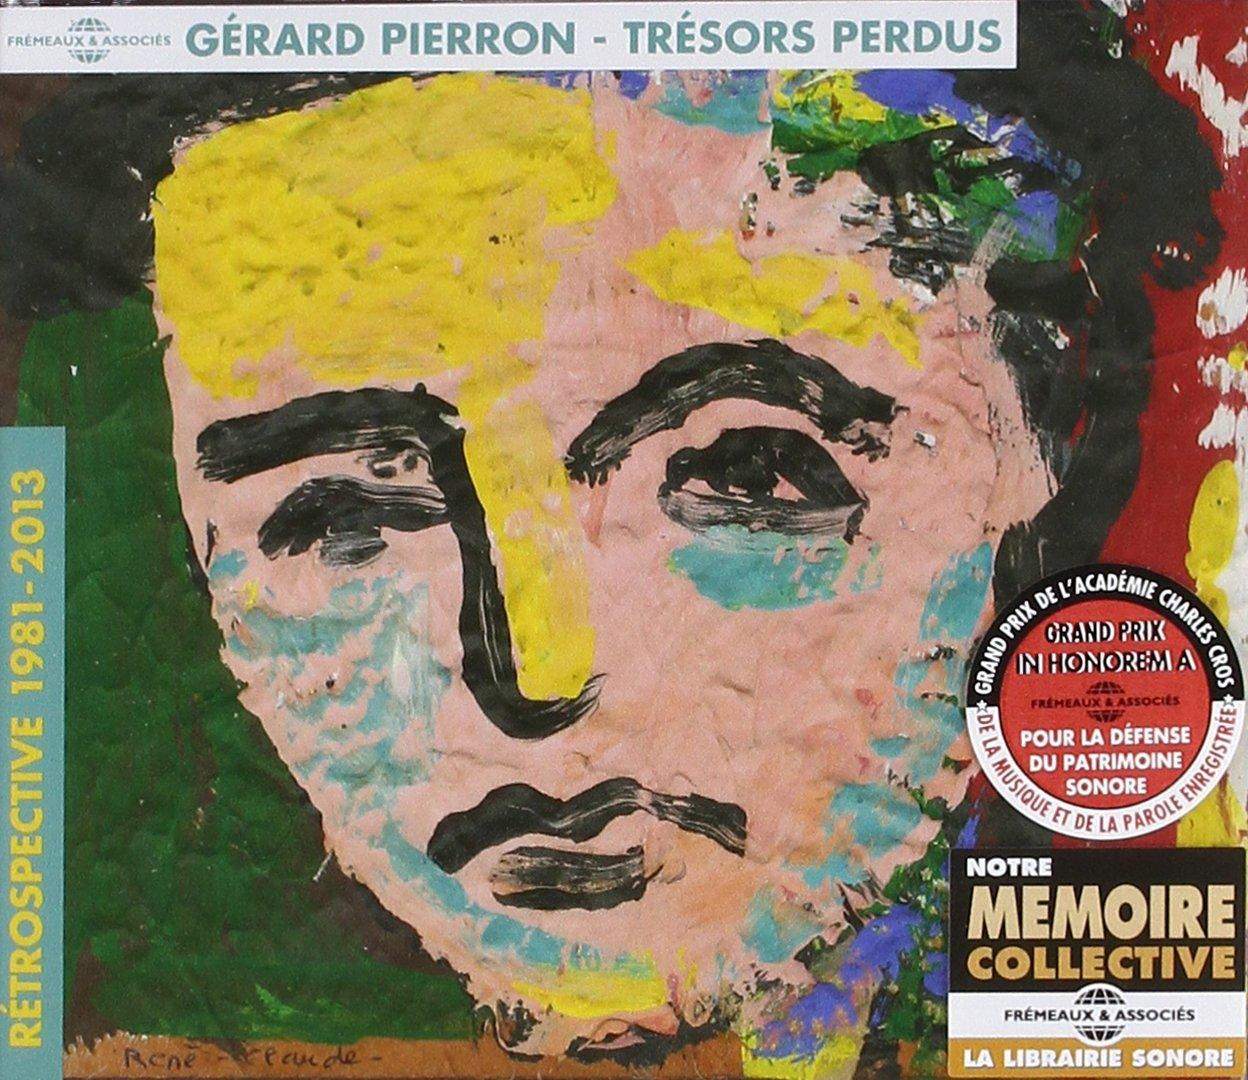 Gerard (CD) Pierron - Perdus-Rétrospective Trésors 1981-2013 -